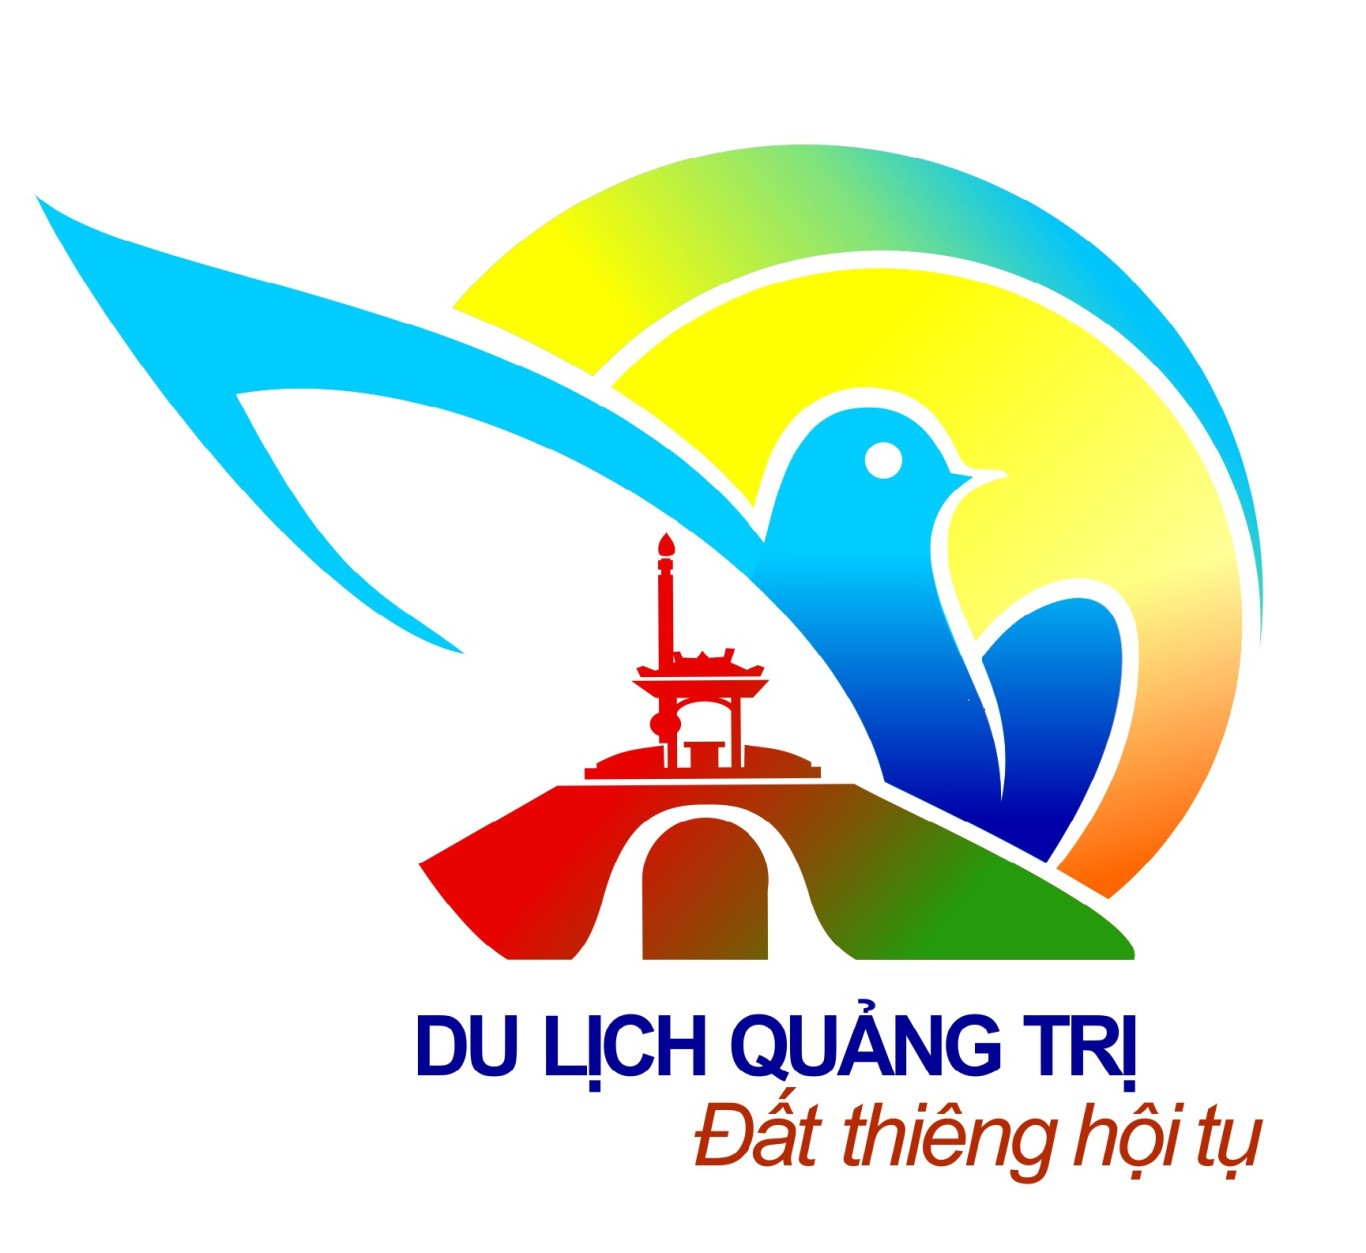 Bộ nhận diện thương hiệu du lịch Quảng Trị là kết hợp giữa tác phẩm giải Nhất logo với giải Nhất slogan